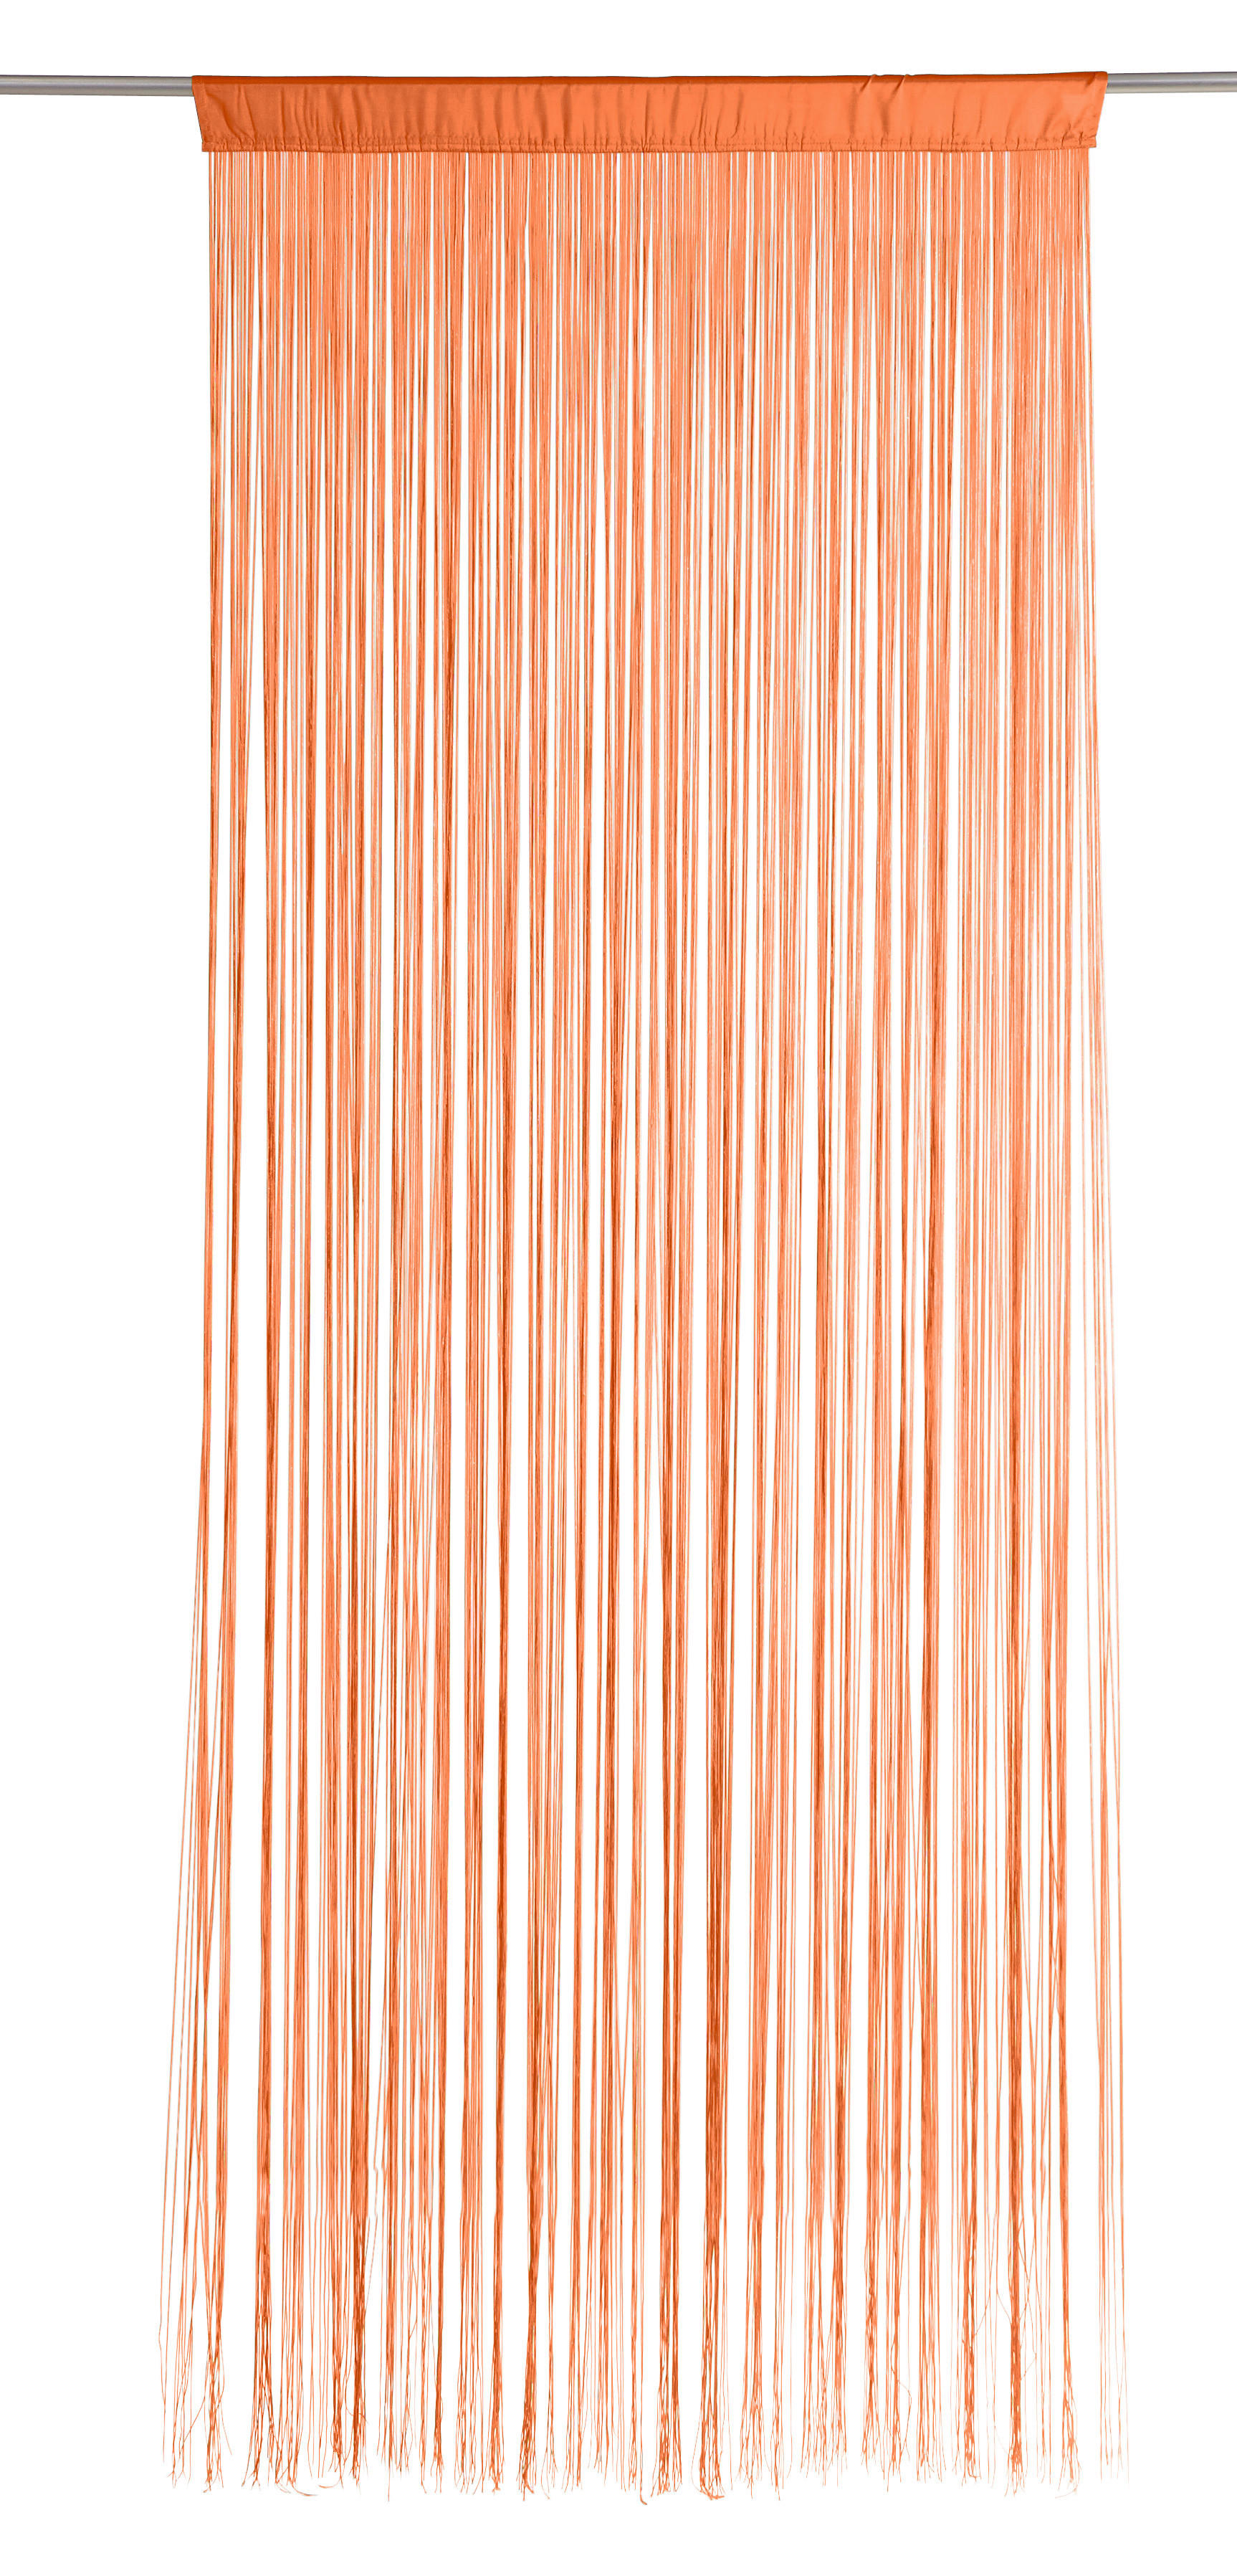 NITASTA ZAVESA UNI, ORANŽNA  prosojno  90/245 cm   - oranžna, Konvencionalno, tekstil (90/245cm) - Boxxx